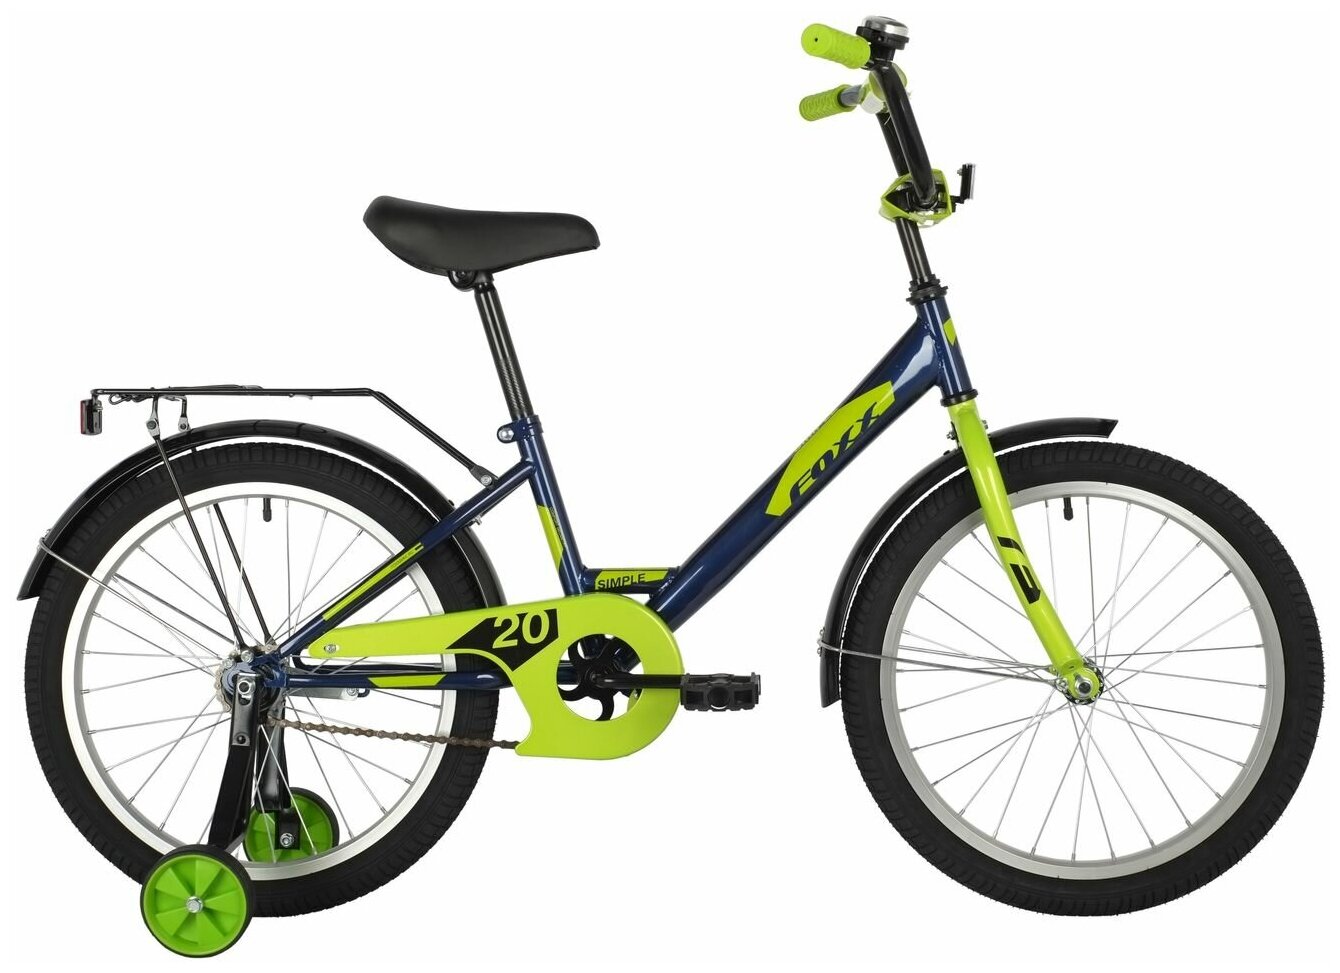 Велосипед FOXX SIMPLE 20" (2021) (Велосипед FOXX 20" SIMPLE синий, сталь, тормоз нож, крылья, багажник)